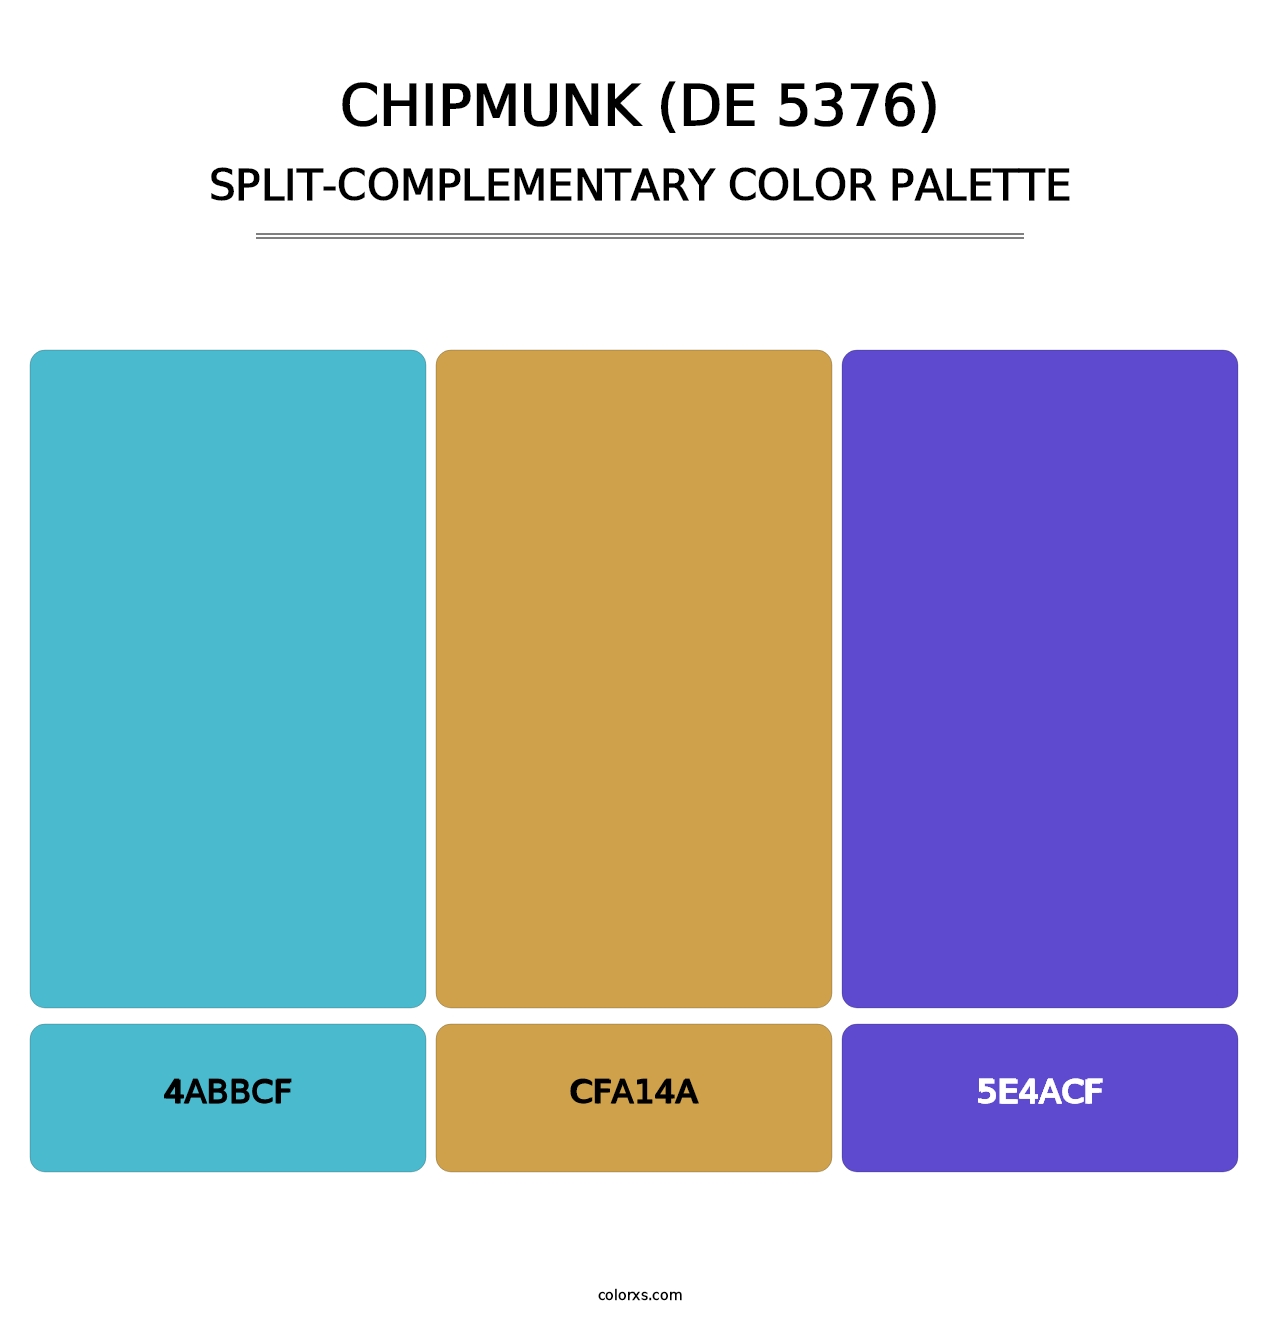 Chipmunk (DE 5376) - Split-Complementary Color Palette